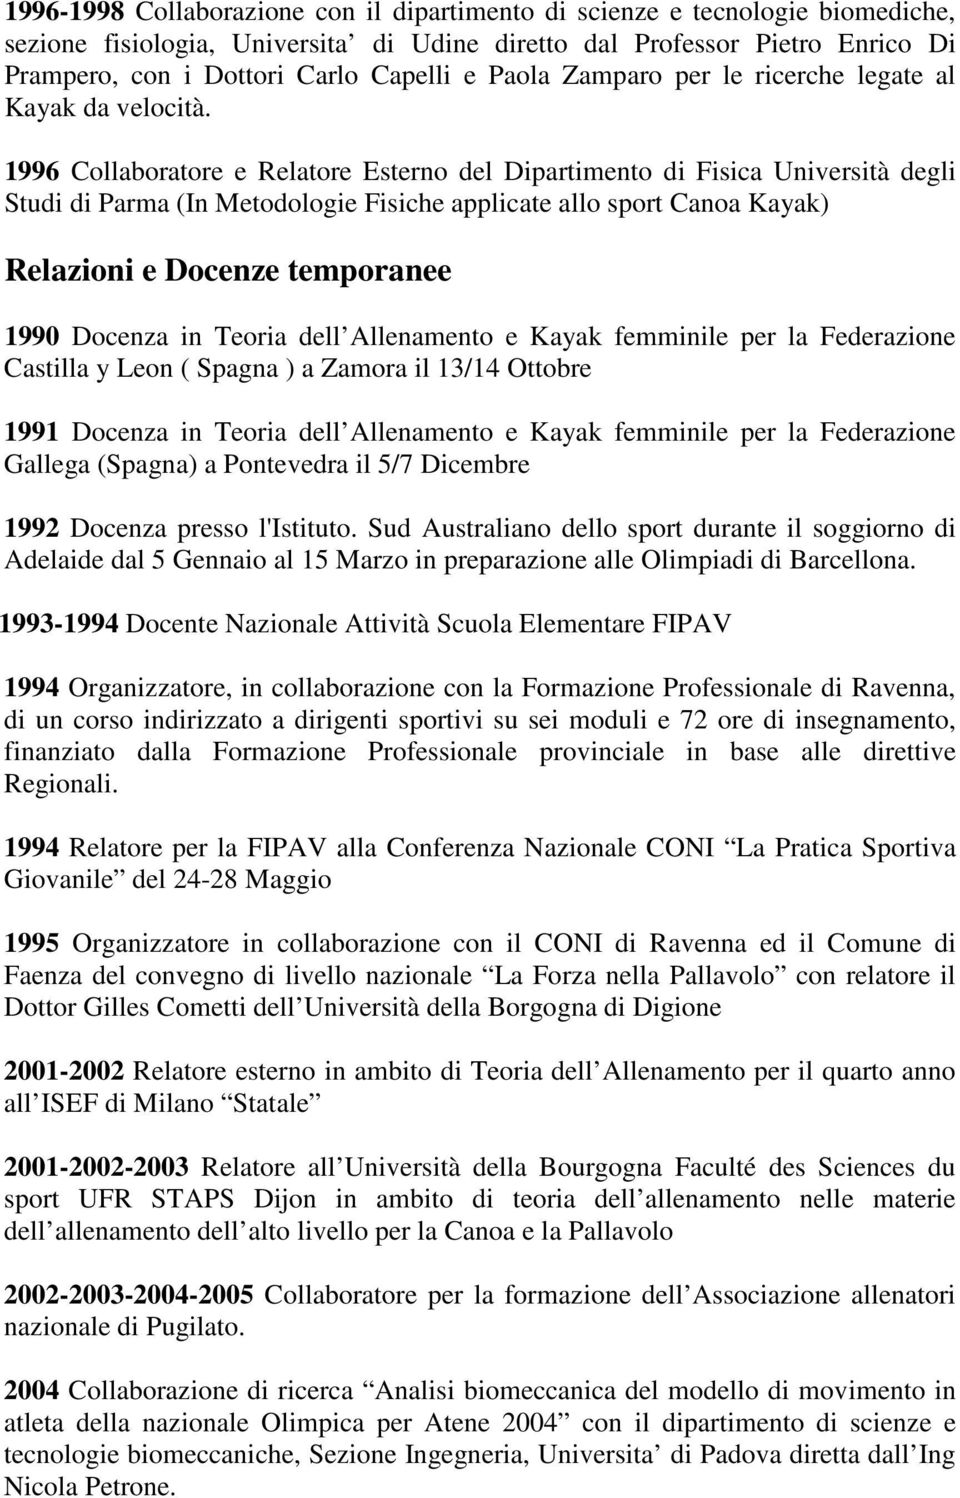 1996 Collaboratore e Relatore Esterno del Dipartimento di Fisica Università degli Studi di Parma (In Metodologie Fisiche applicate allo sport Canoa Kayak) Relazioni e Docenze temporanee 1990 Docenza